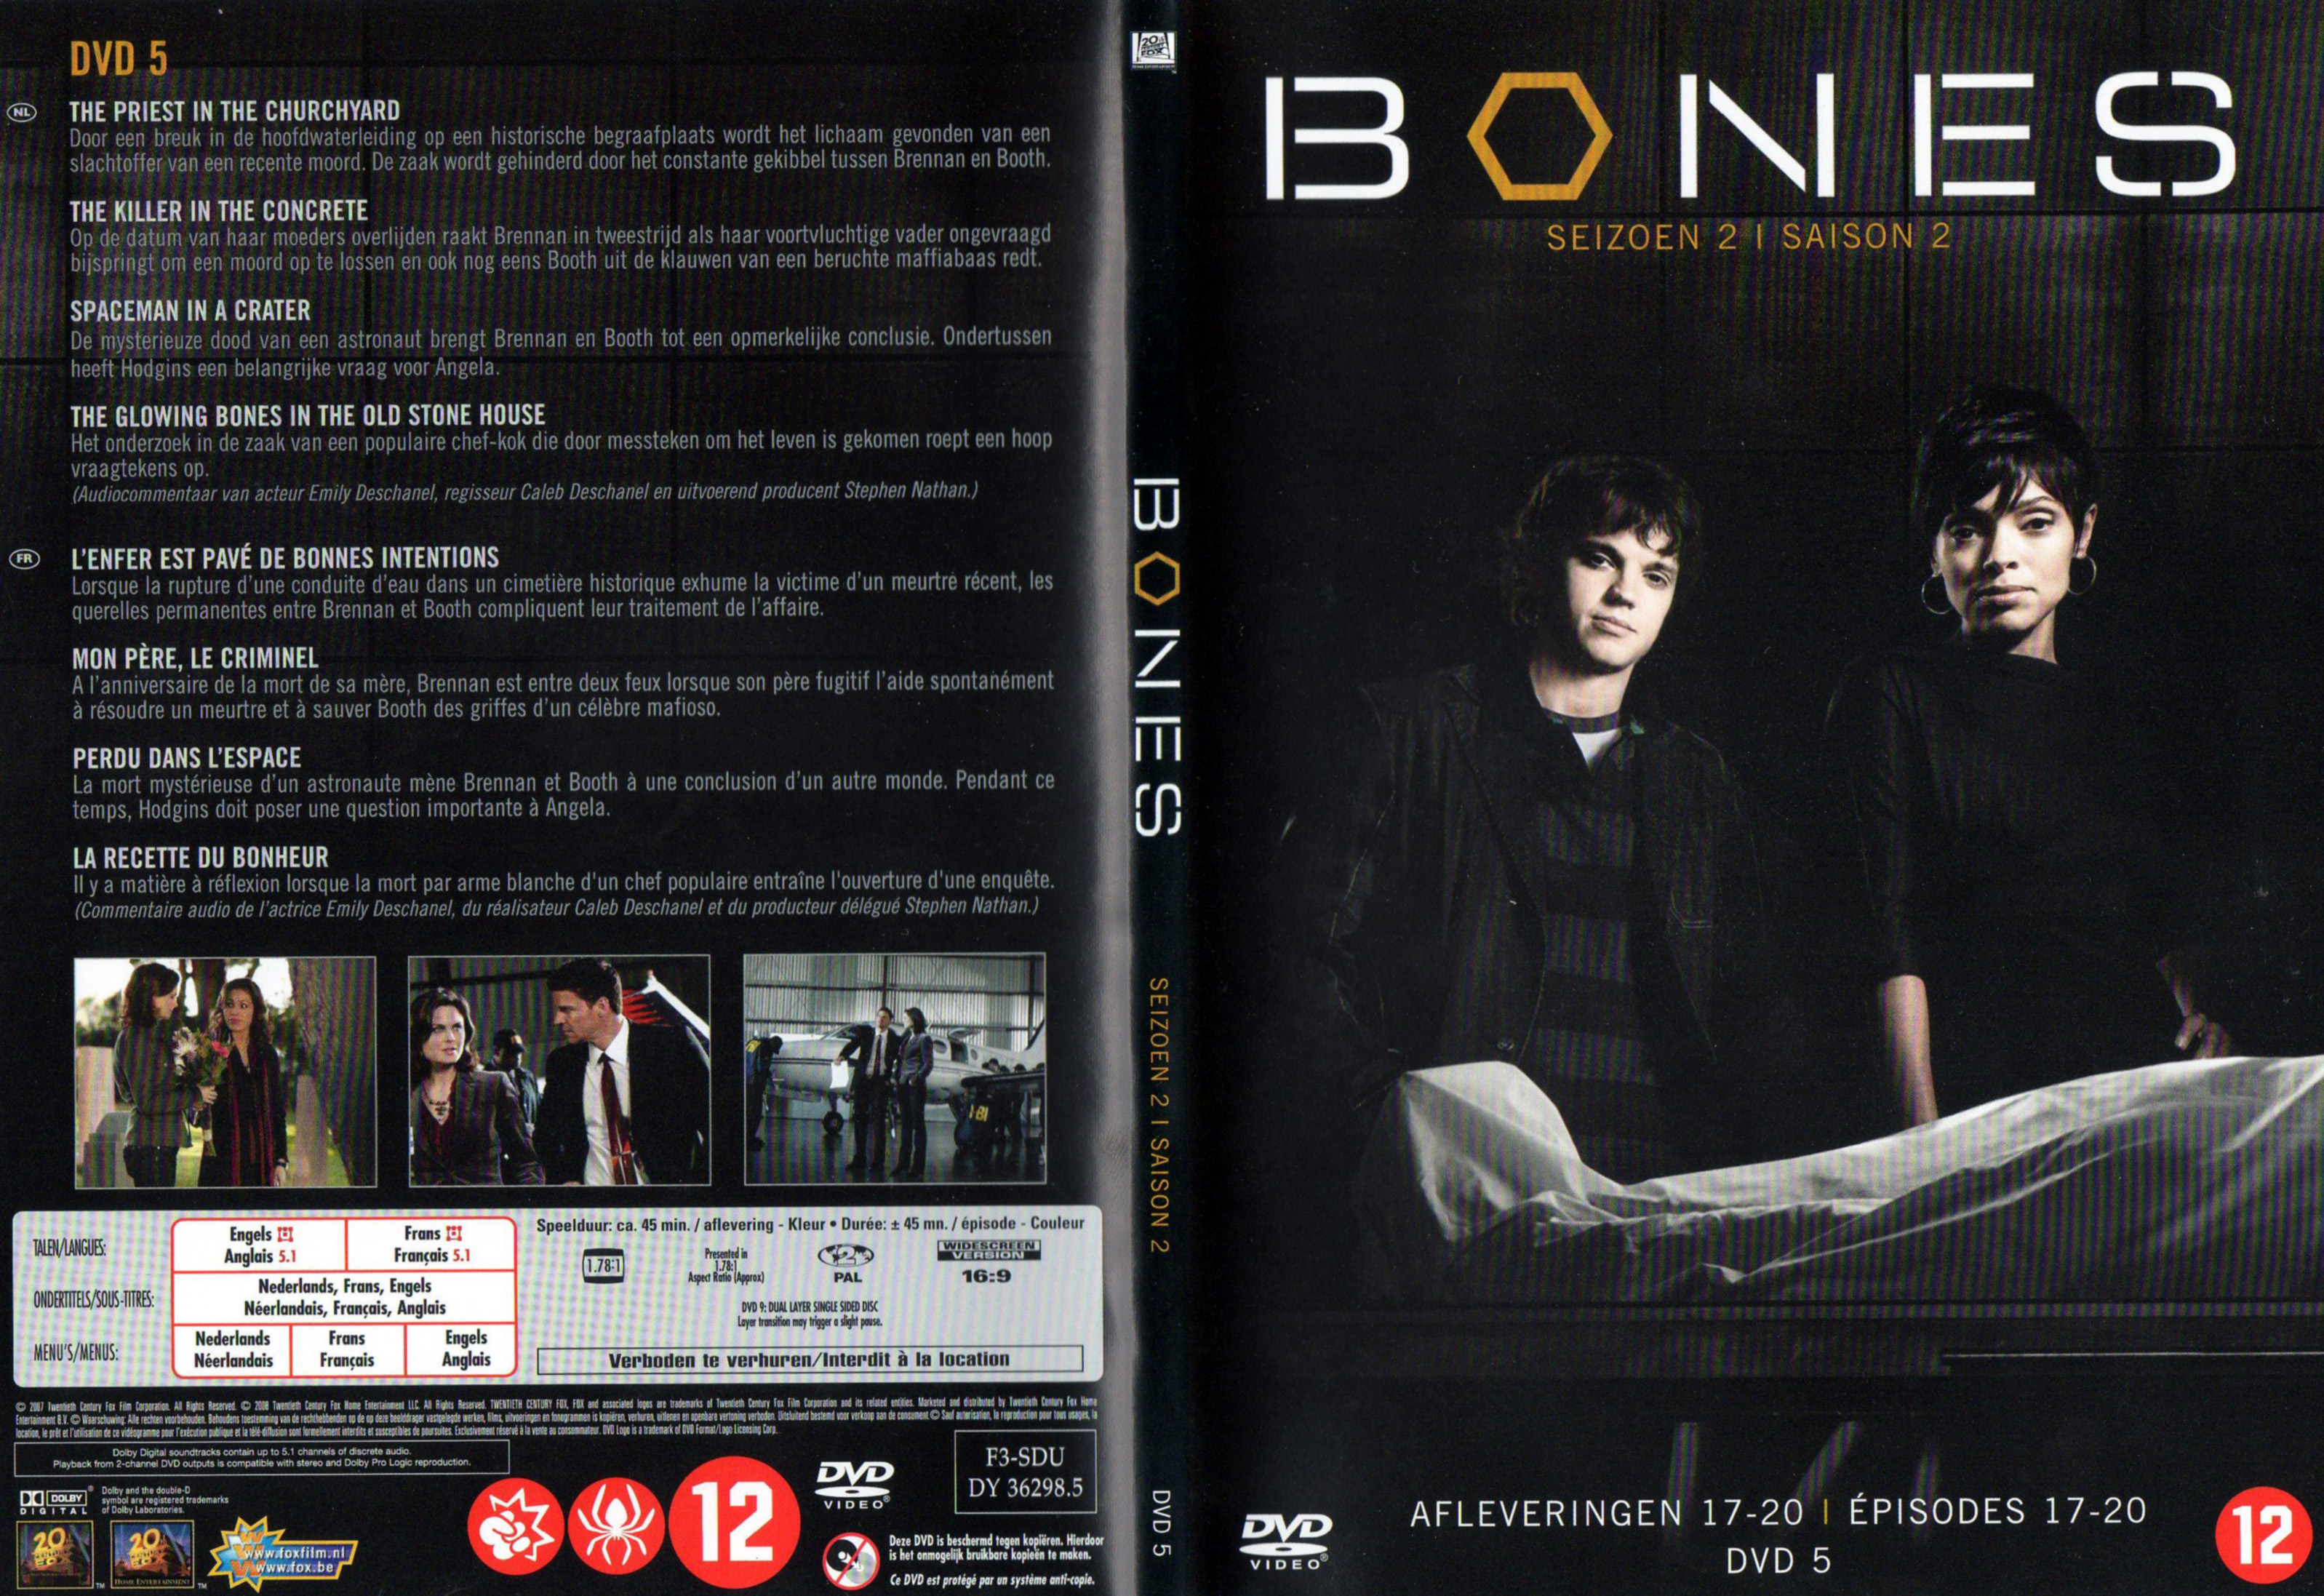 Jaquette DVD Bones Saison 2 DVD 5 v2